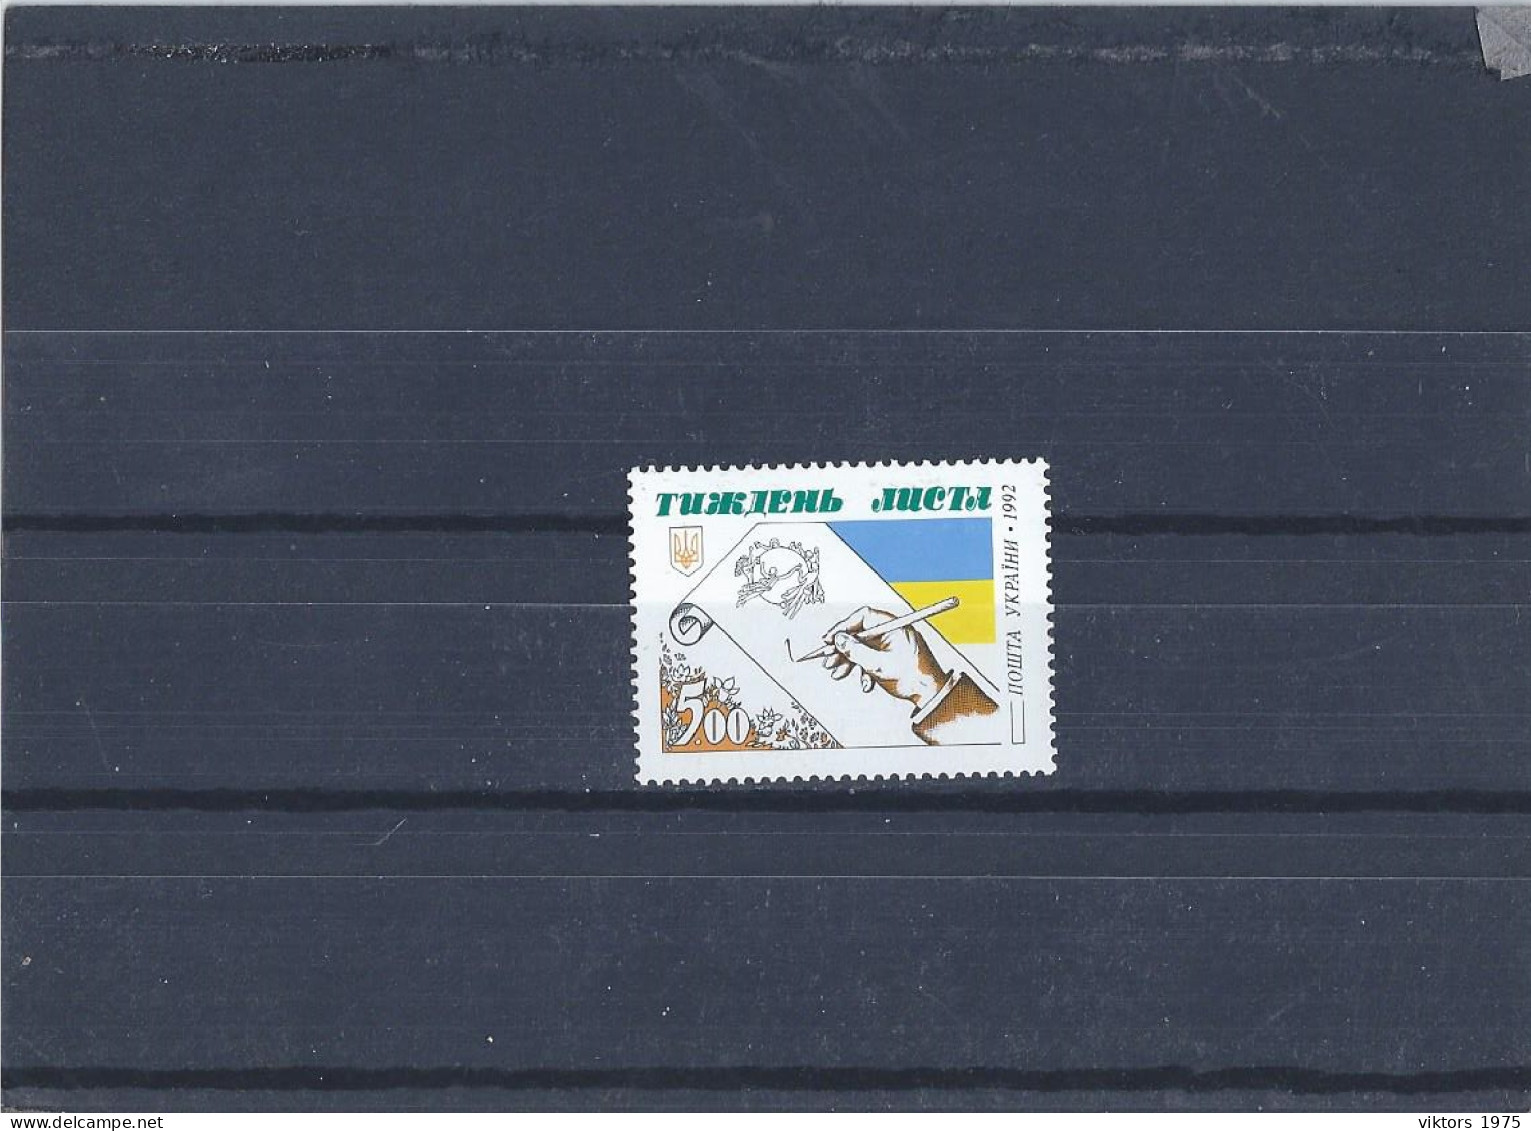 MNH Stamp Nr.89 In MICHEL Catalog - Ukraine